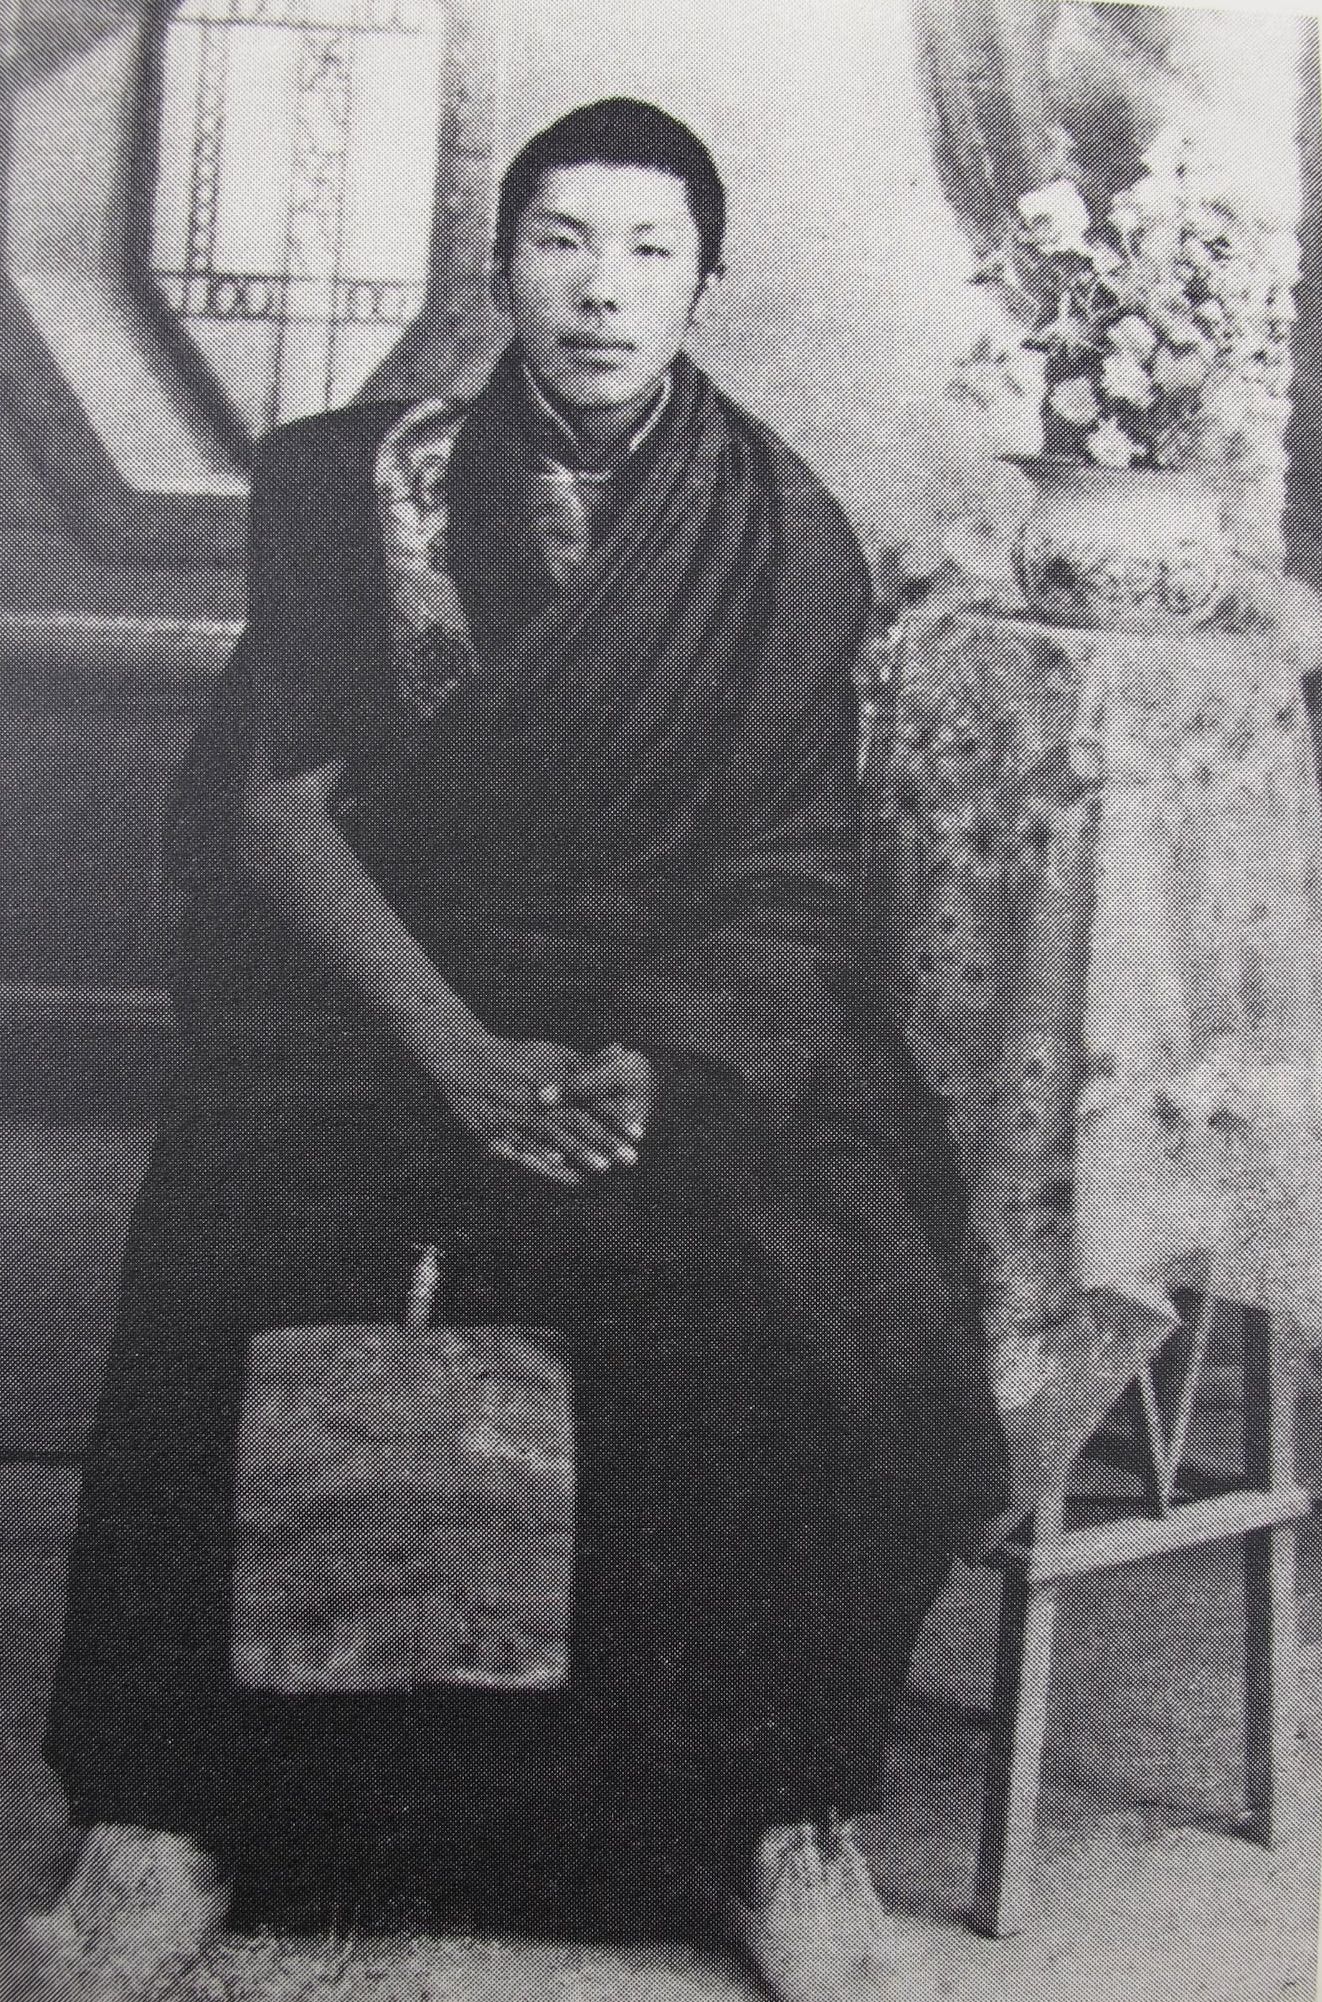 Chogyam Trungpa,18